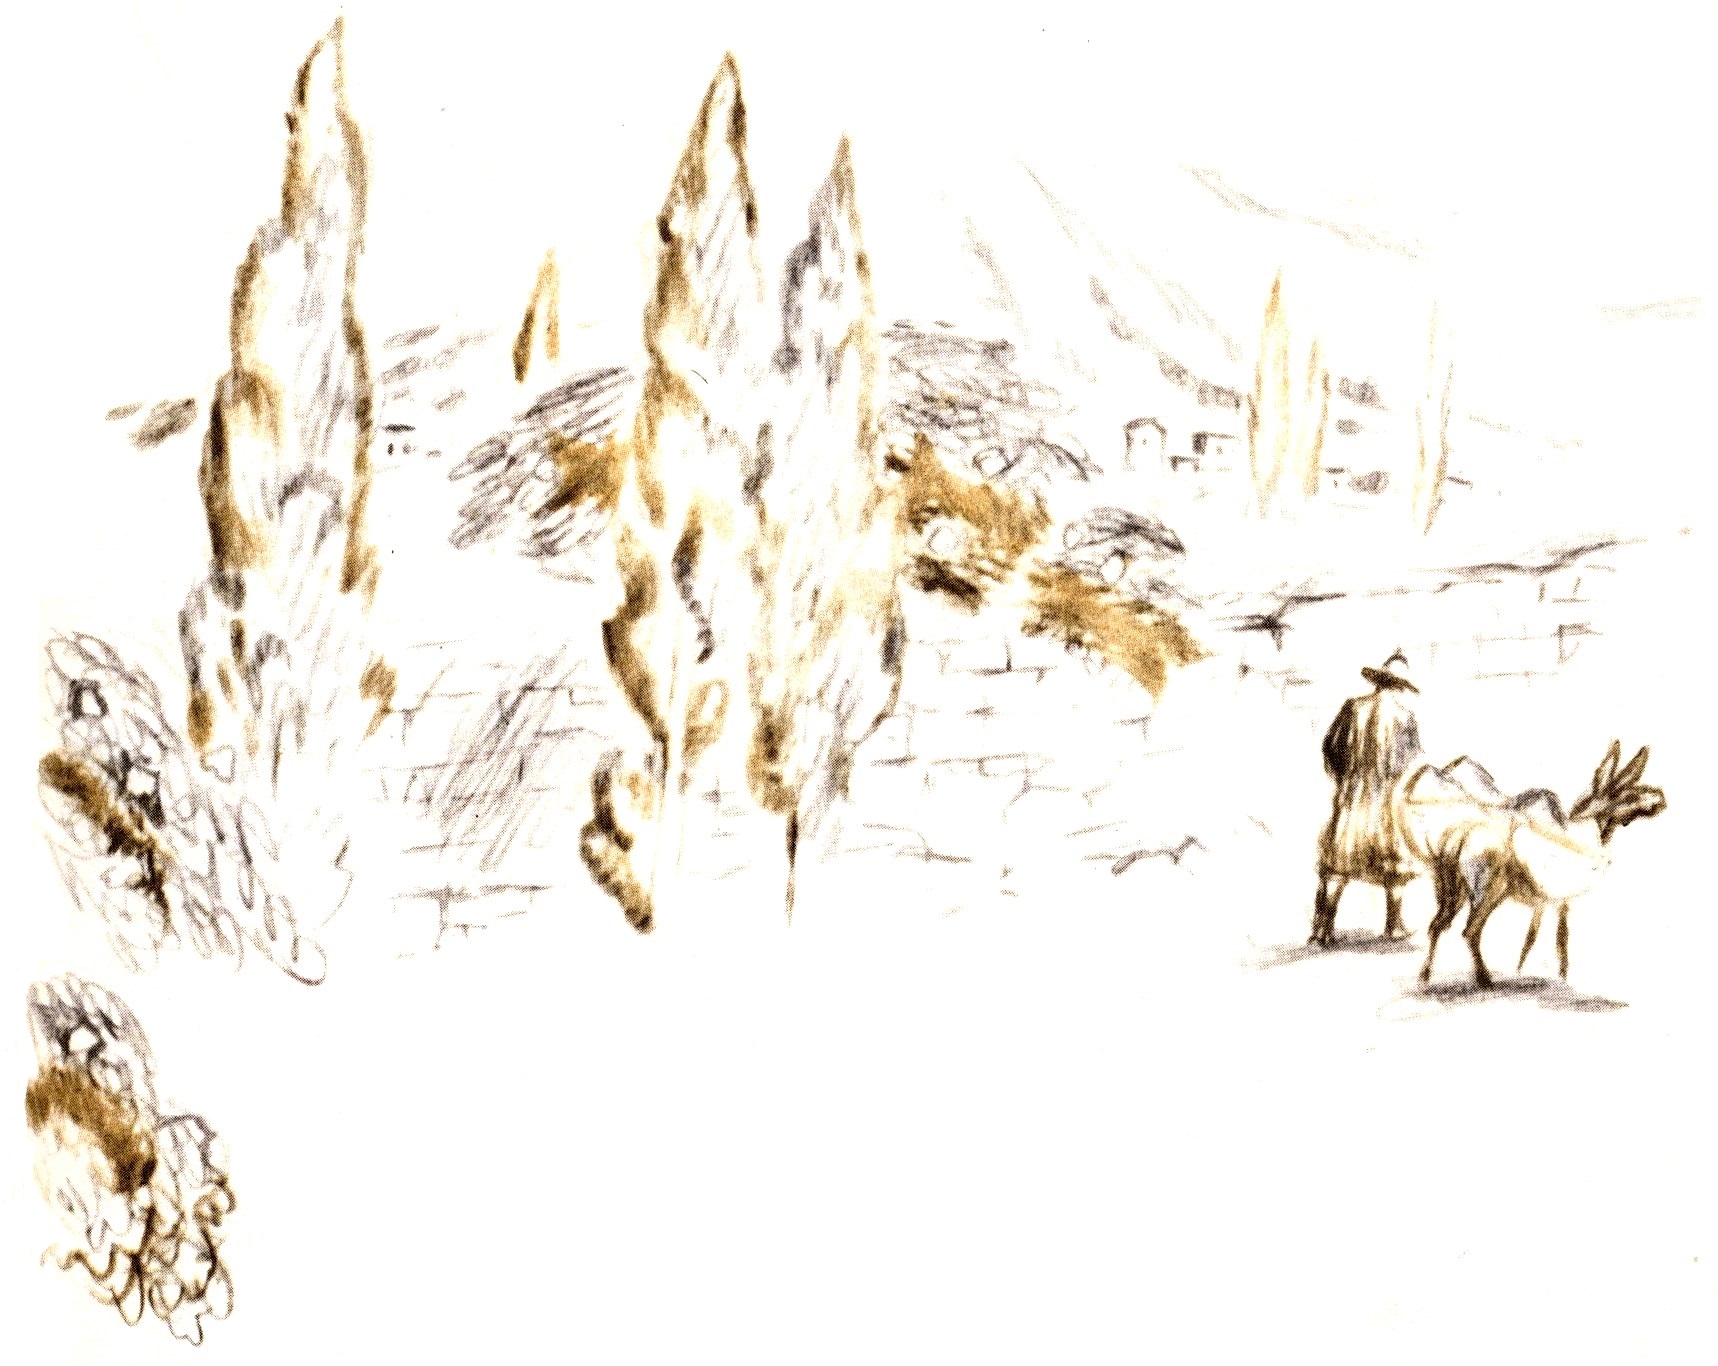 А. Блок. "Я ломаю слоистые скалы..." (Из поэмы "Соловьиный сад"). Иллюстрации В. Смирнова.